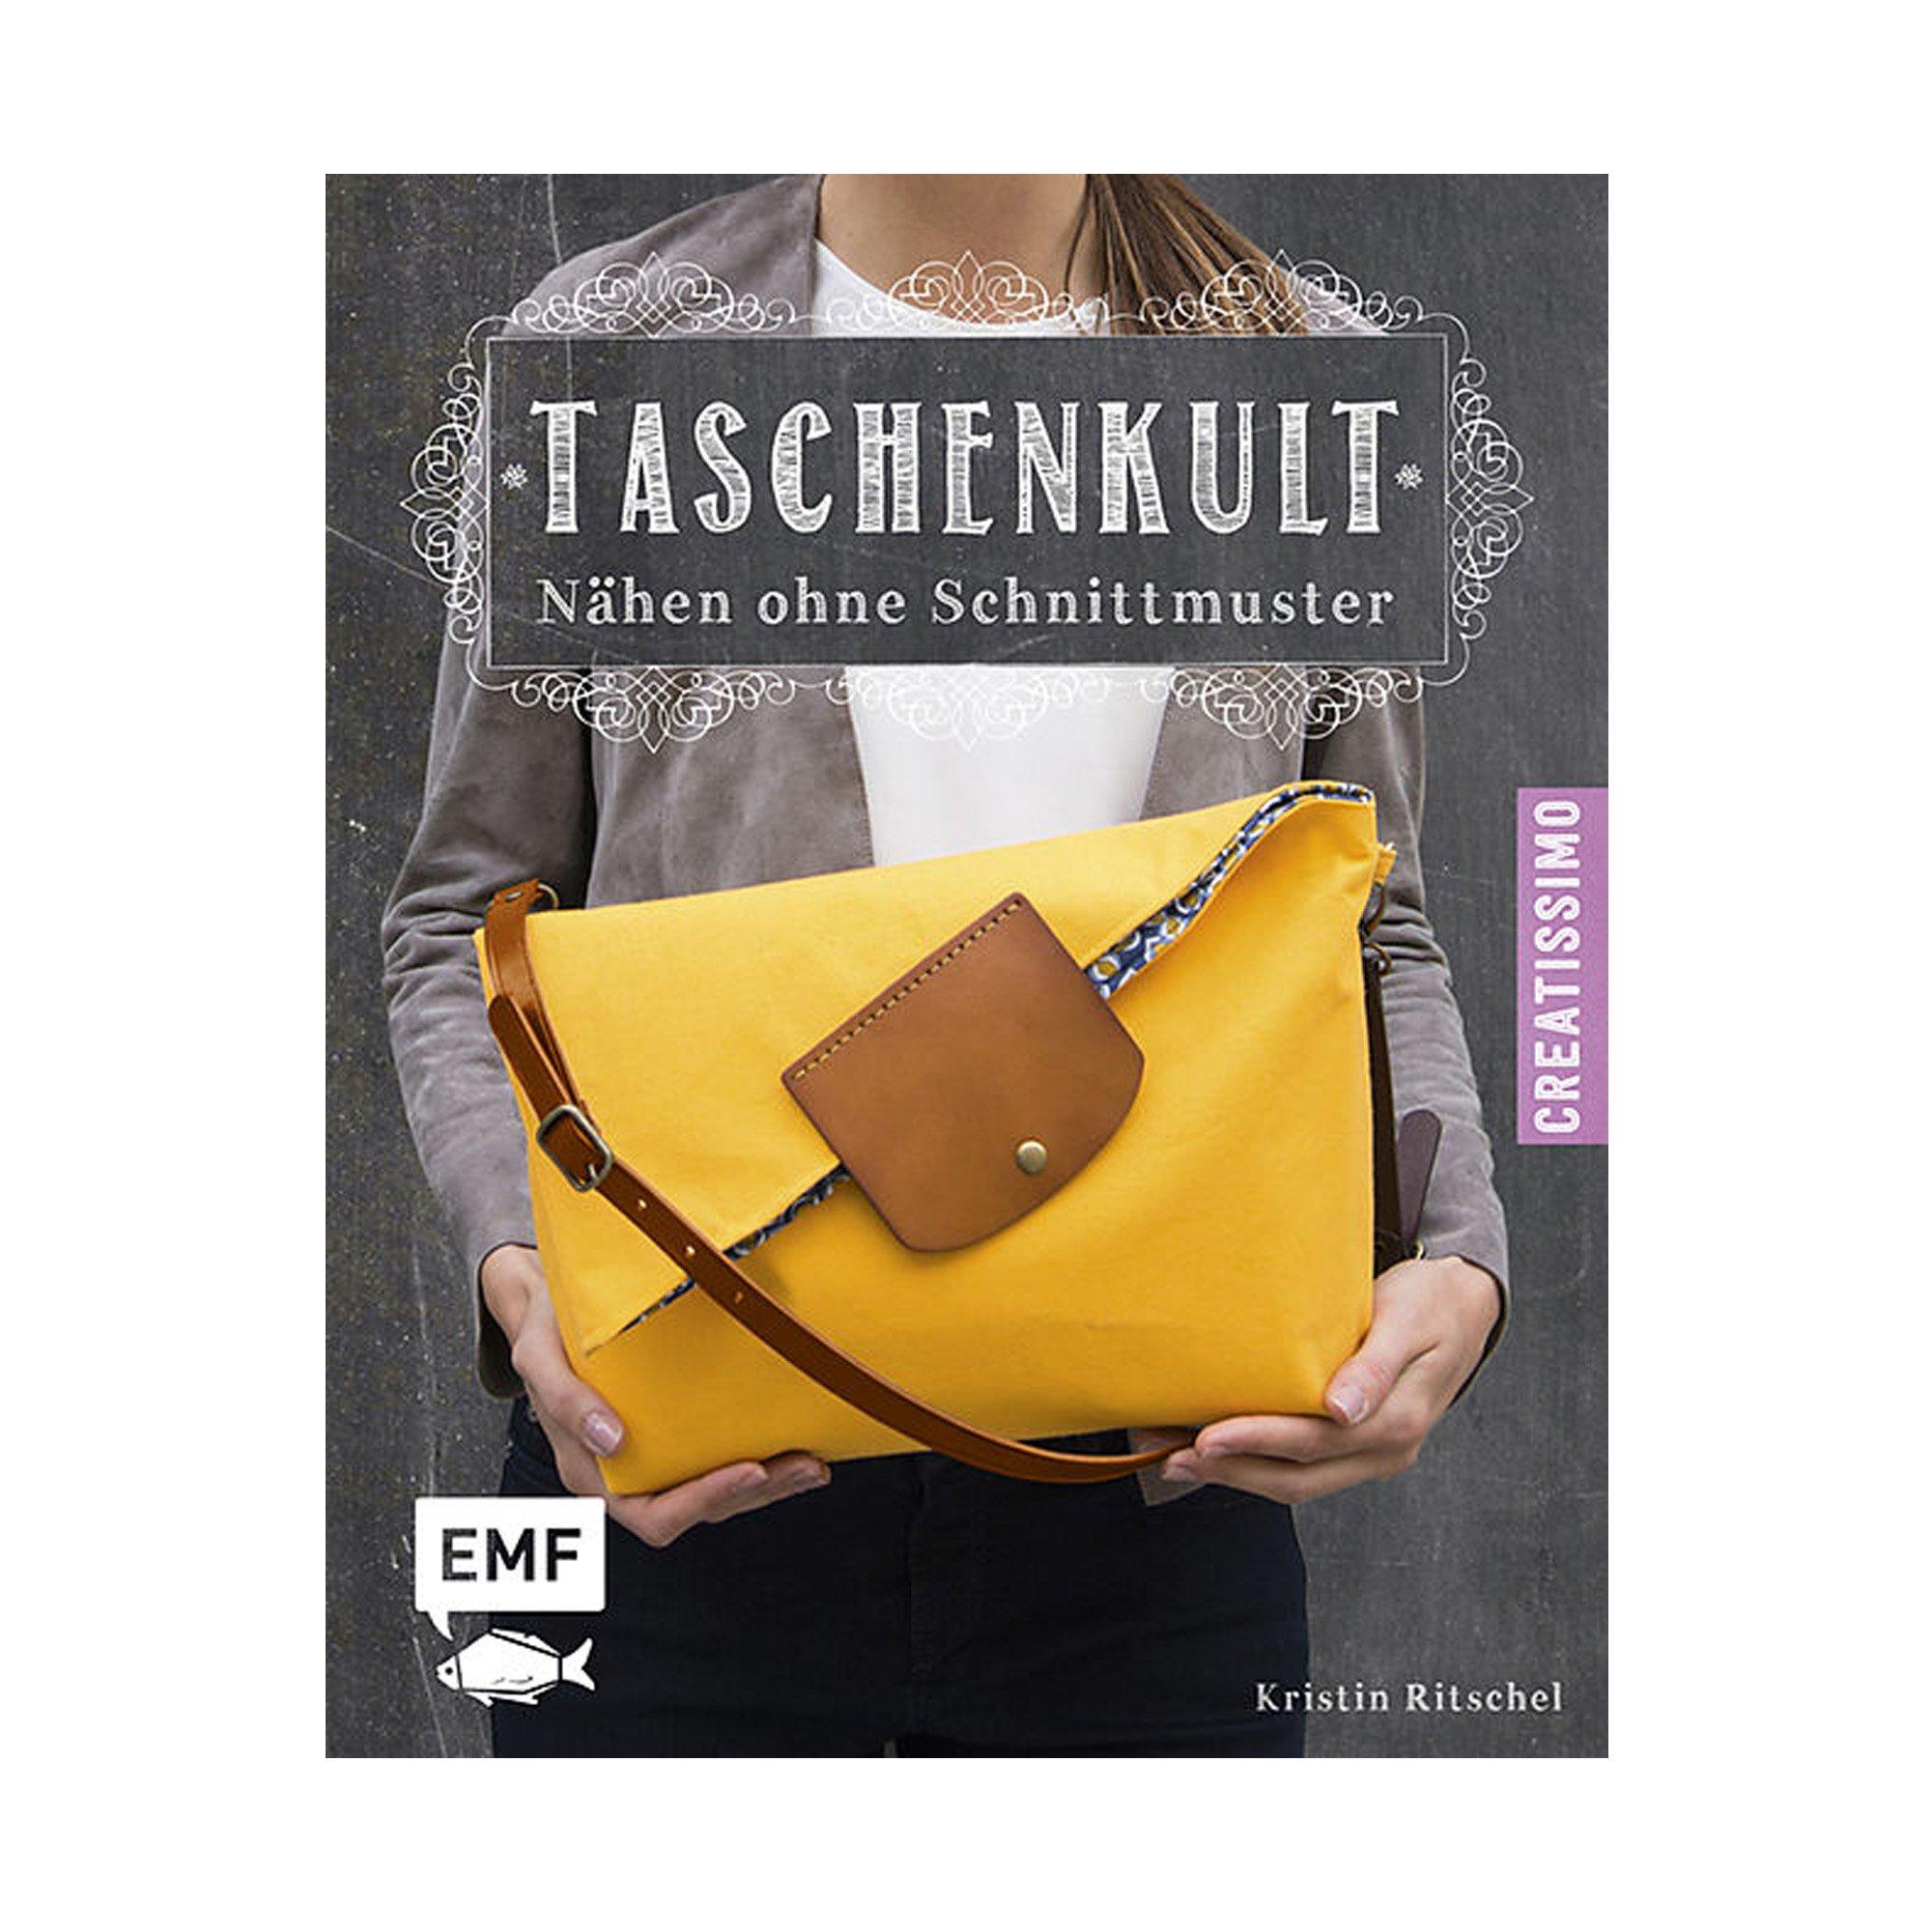 Image of EMF Buch Taschenkult